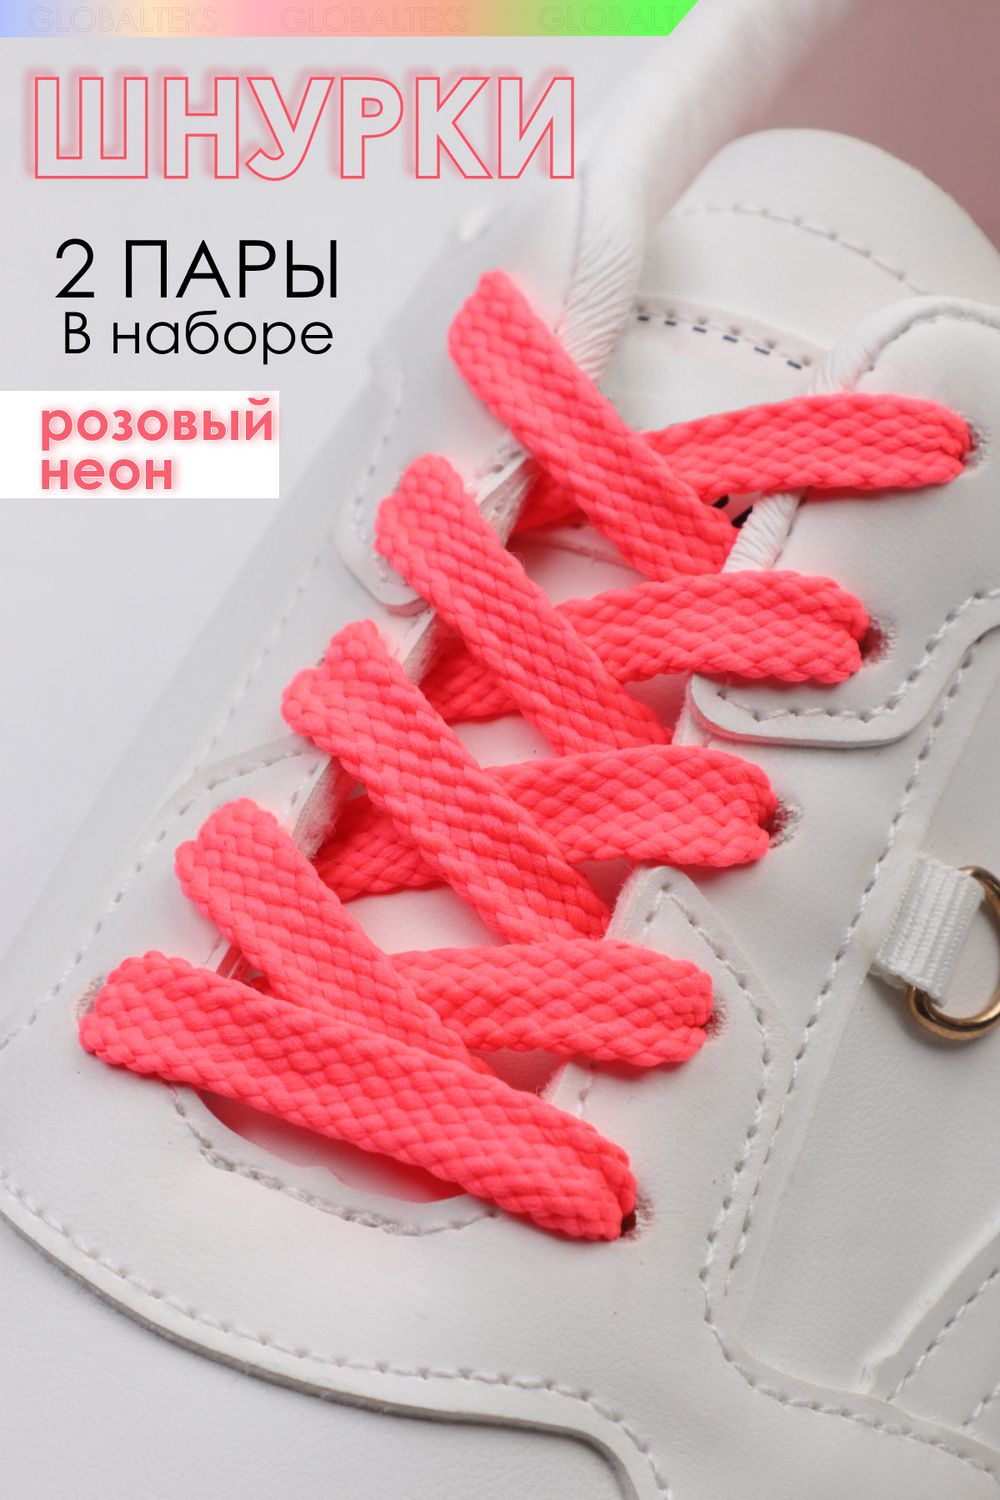 Шнурки для обуви №GL47-1 - розовый неон